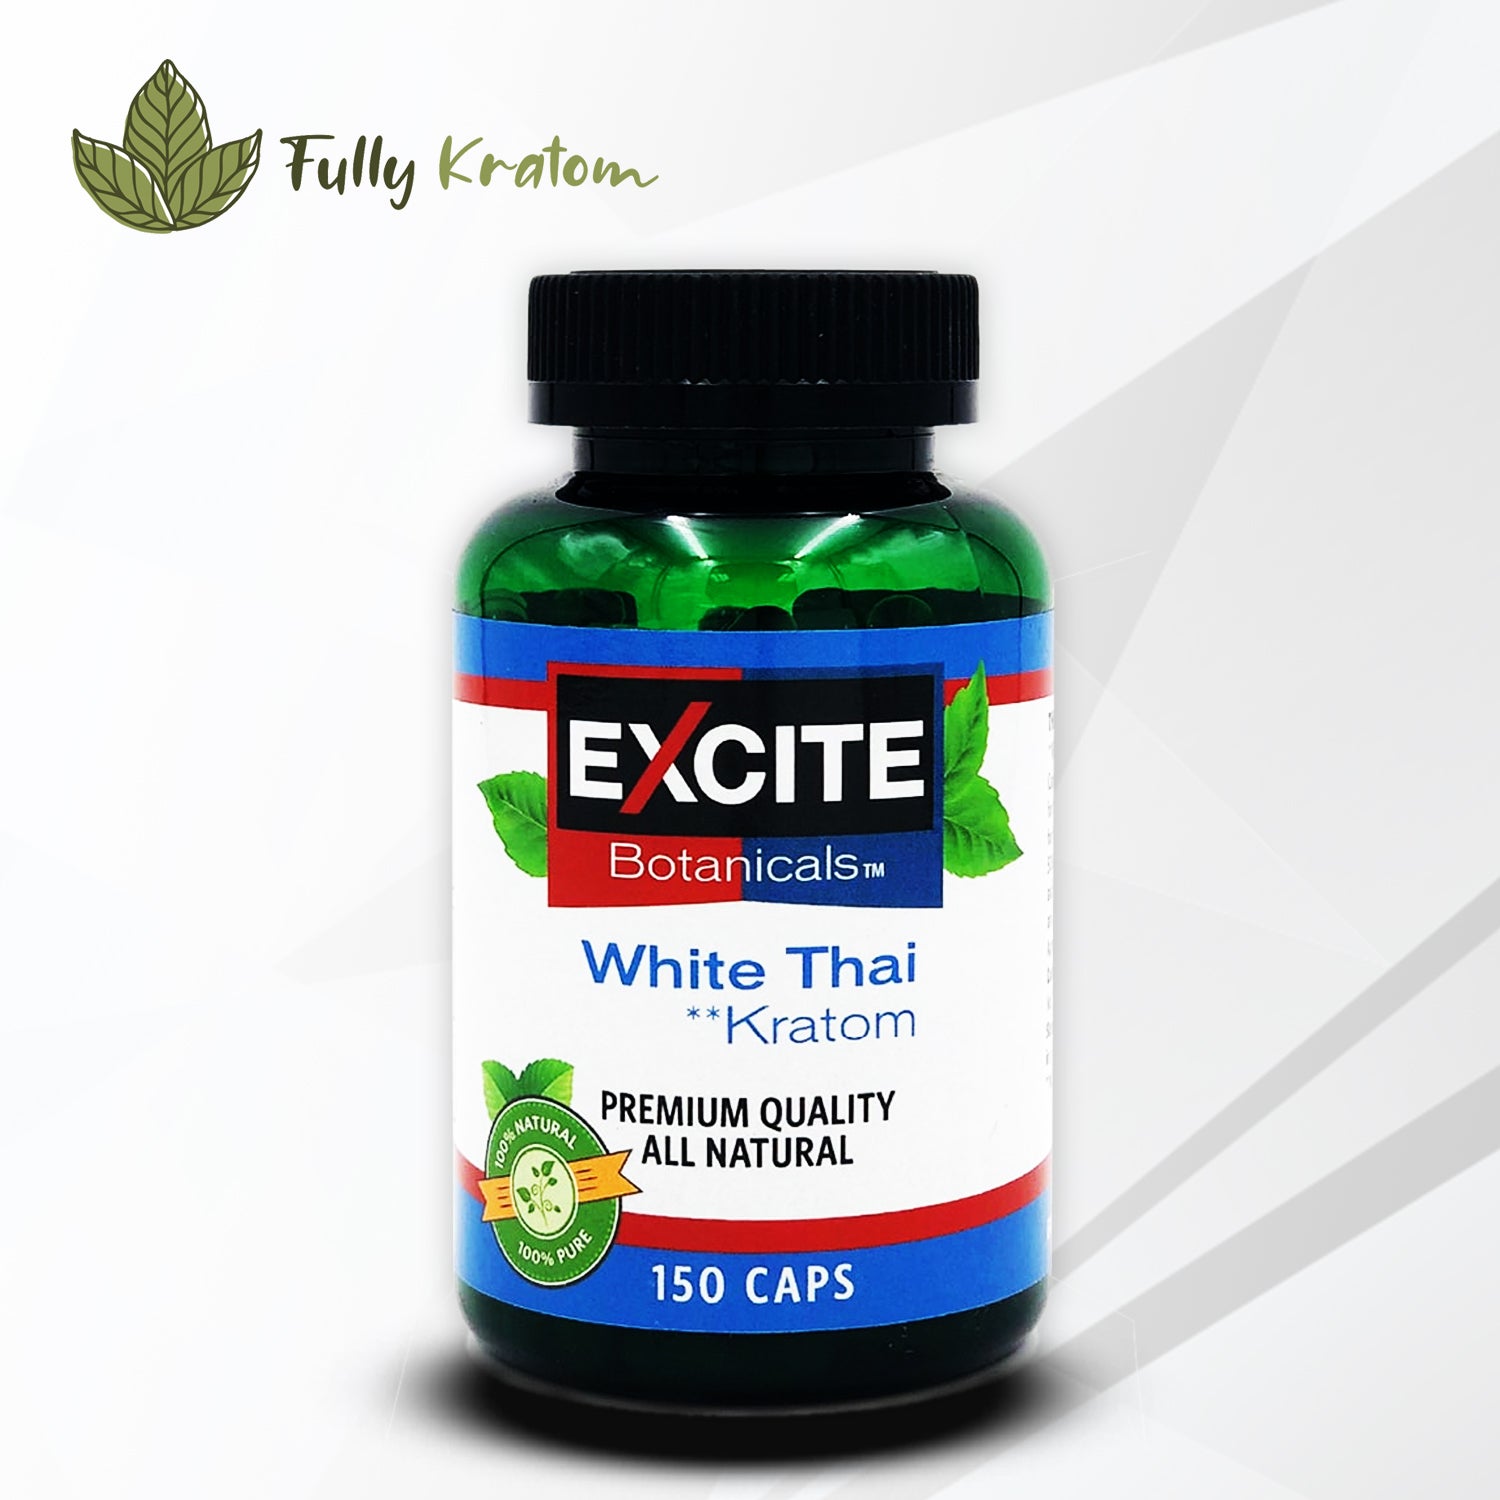 Excite White Thai Kratom Capsules